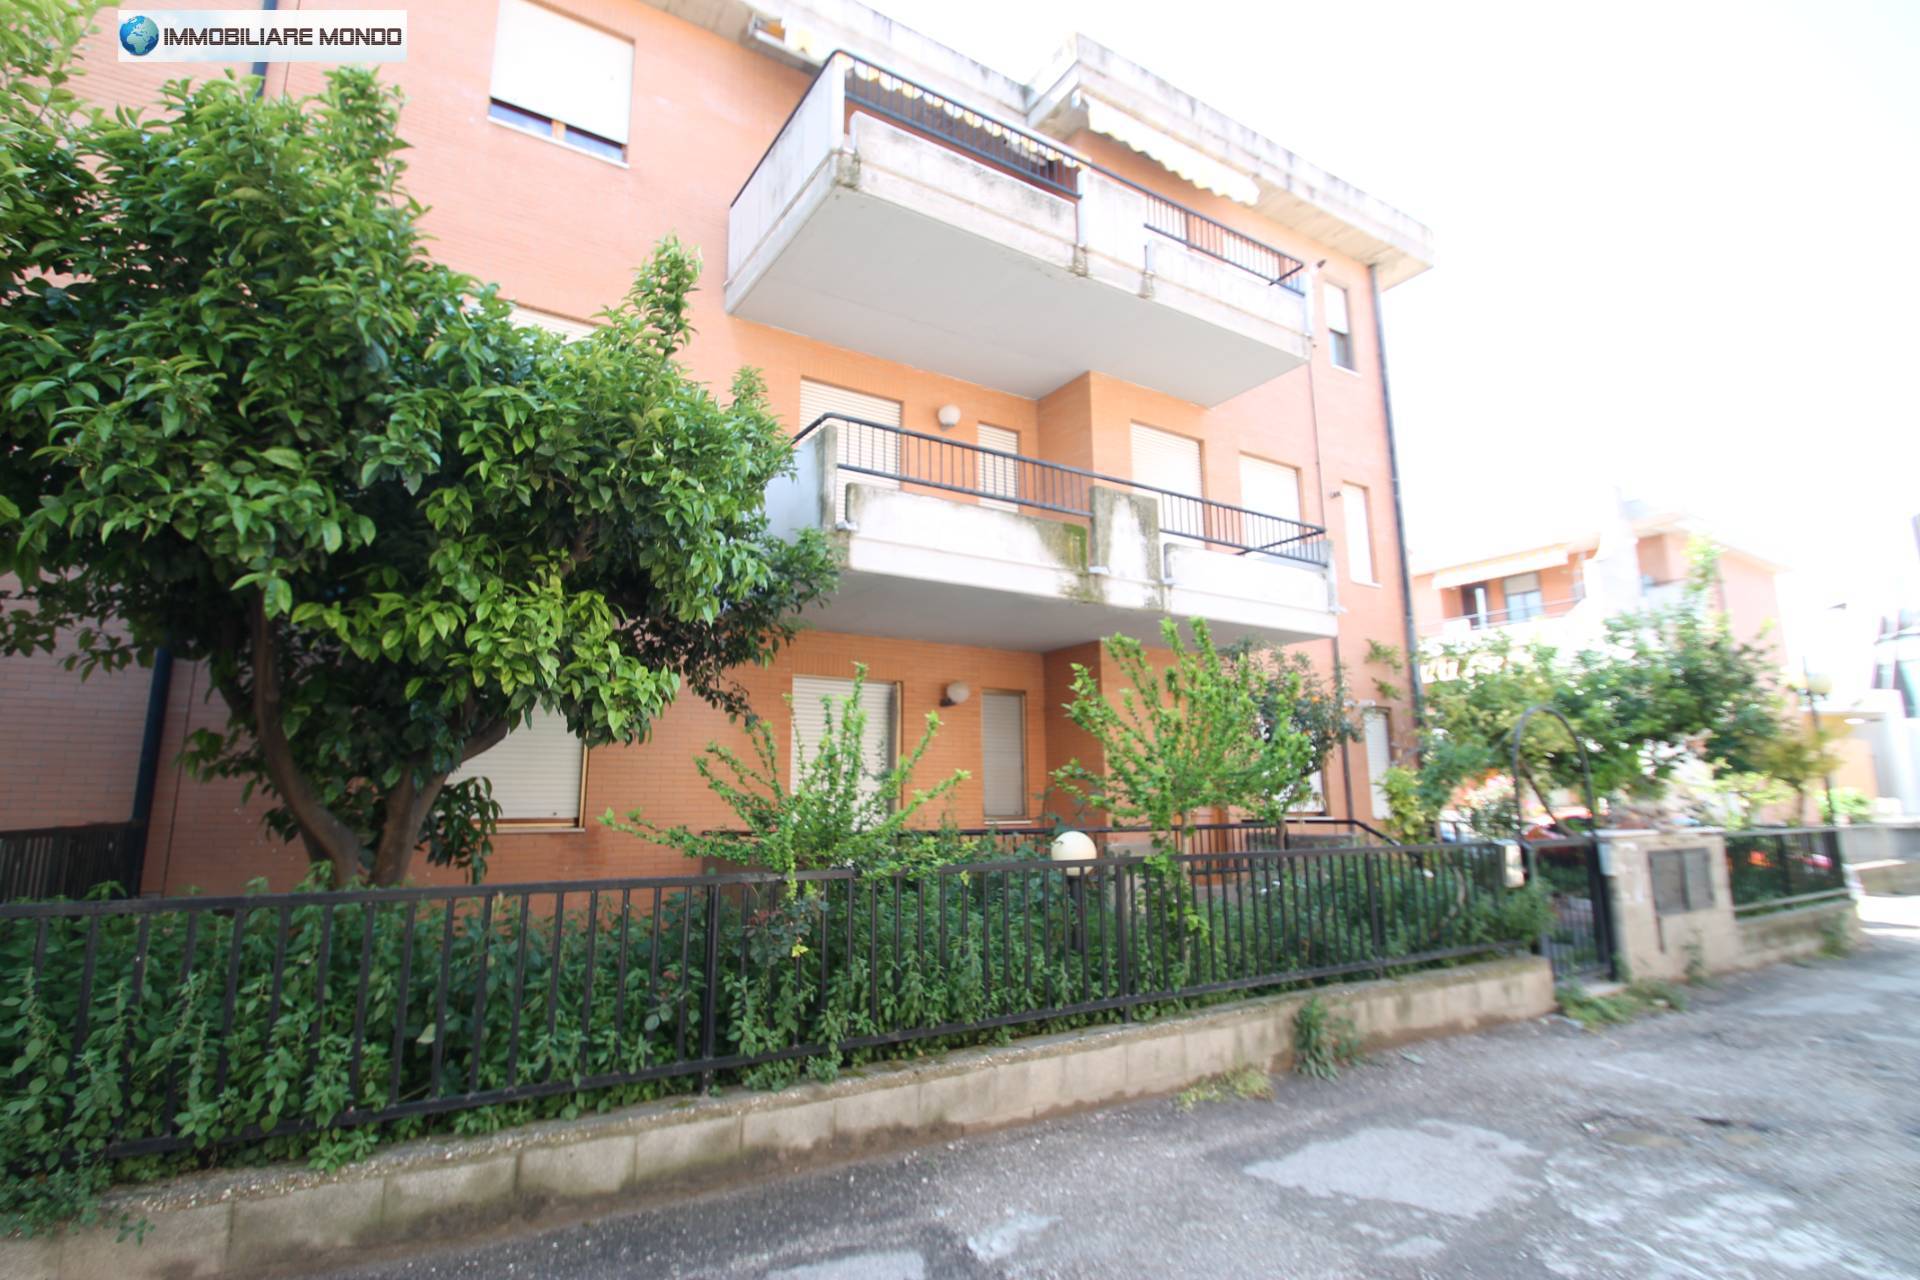 Appartamento in vendita a Campomarino, 3 locali, prezzo € 79.000 | PortaleAgenzieImmobiliari.it